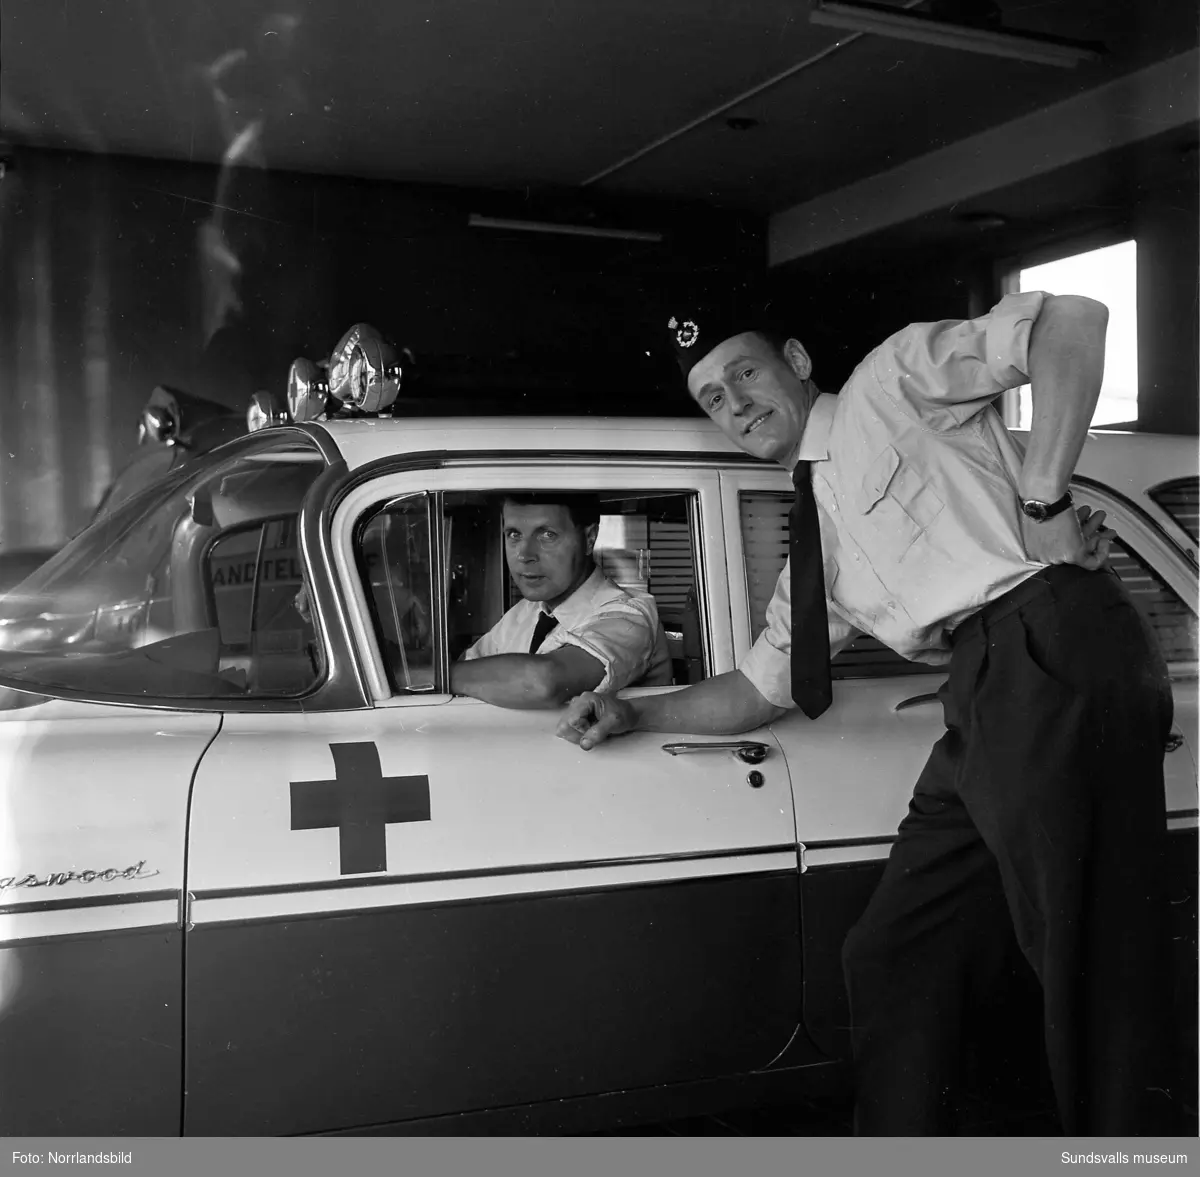 Reportagebilder om de som jobbar på midsommar. En man sköter Alnöfärjan, polisen tar hand om buset, ambulansförare som är redo att rycka ut samt en kvinna som kopplar samtal på telegrafen.